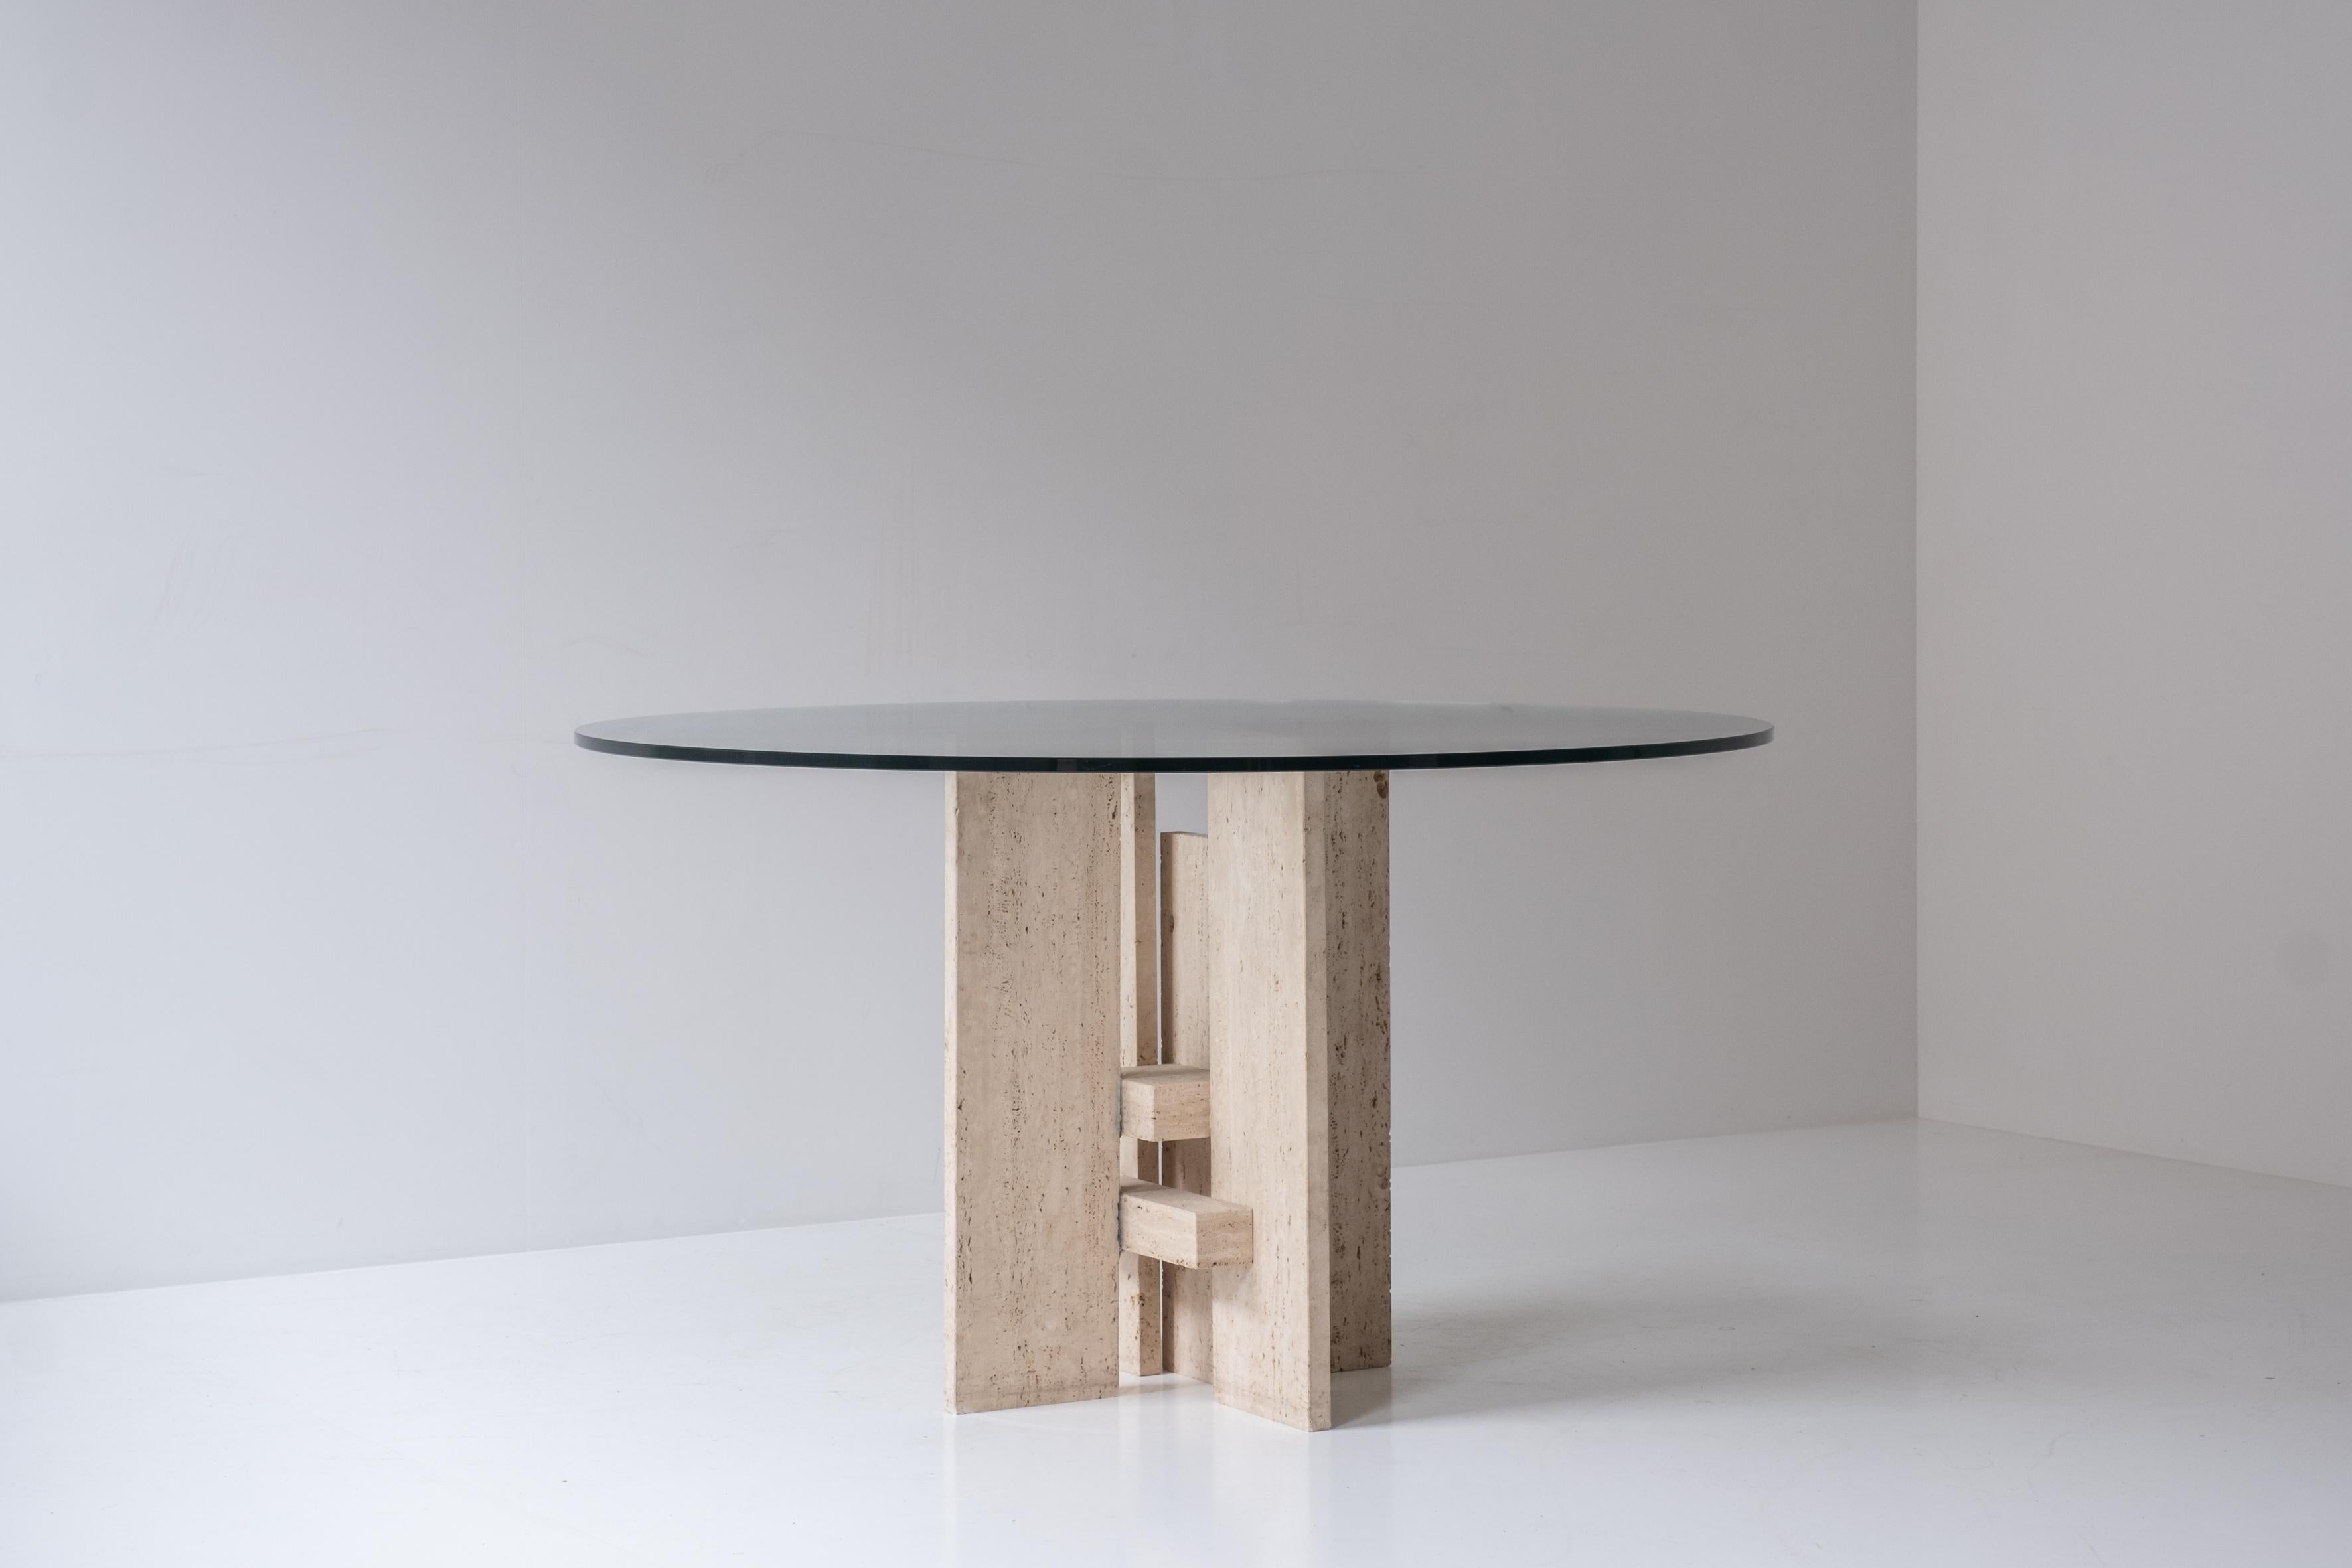 Tisch aus Travertin mit skulpturalem Sockel, entworfen und hergestellt in den 1970er Jahren. Dieser Tisch hat eine runde Glasplatte und ein wunderschönes skulpturales Untergestell. Eignet sich perfekt als Mittelstück. Sehr elegantes und charmantes